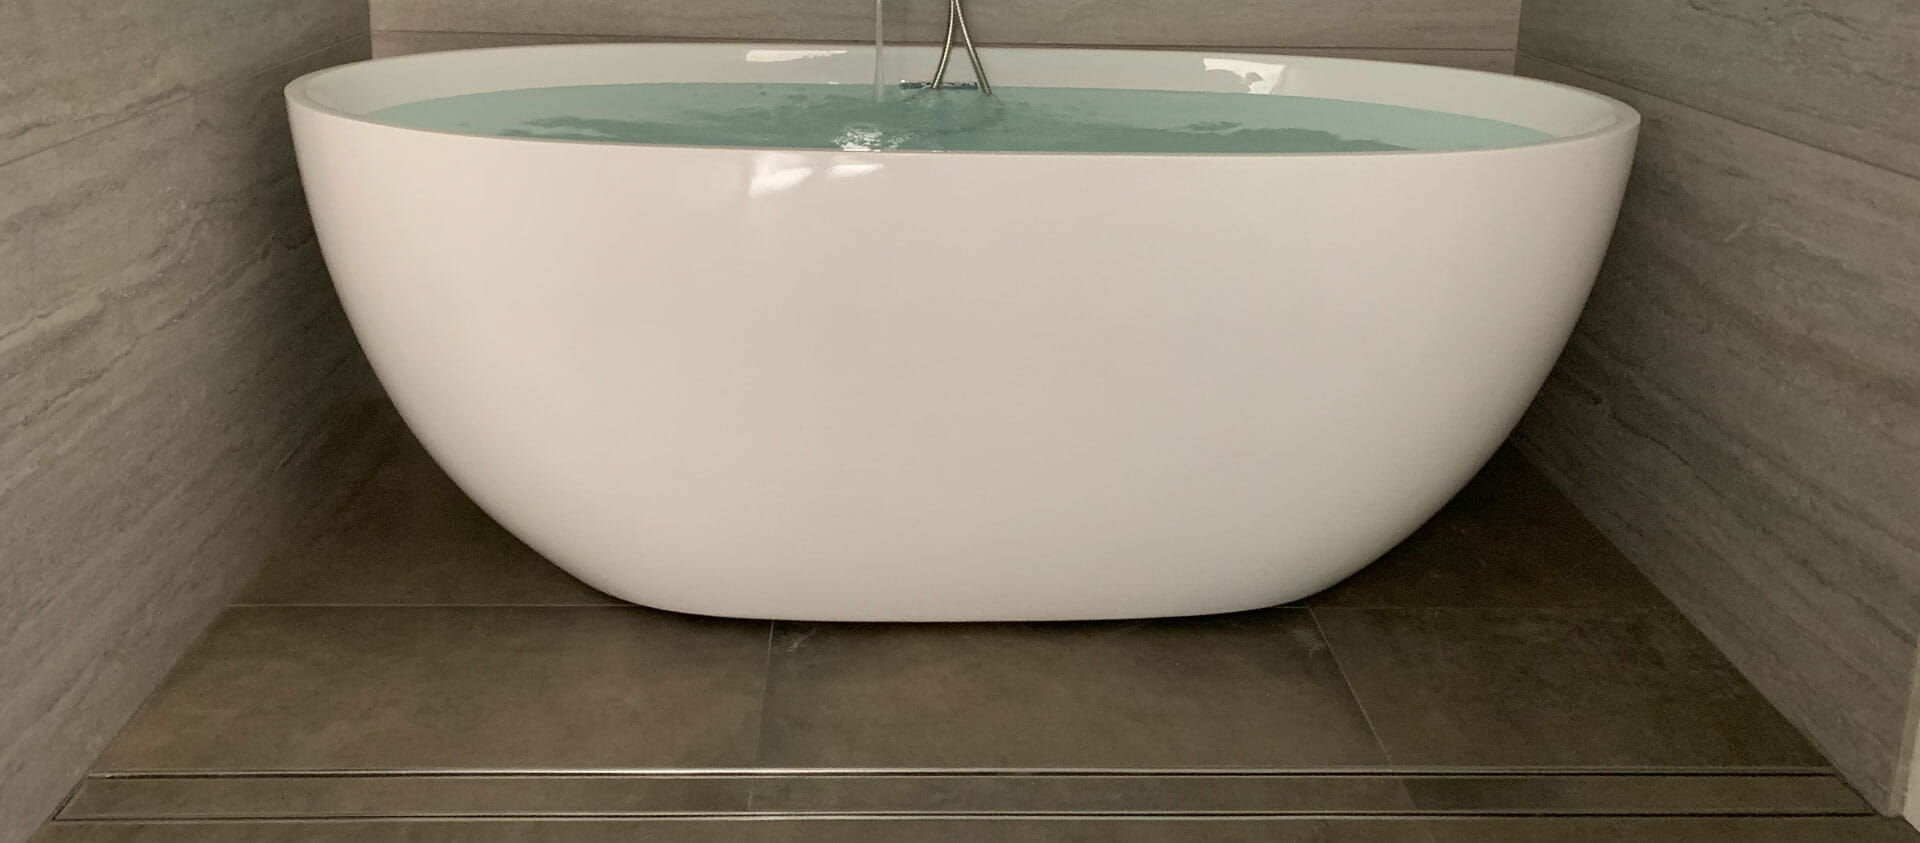 Bathroom tub